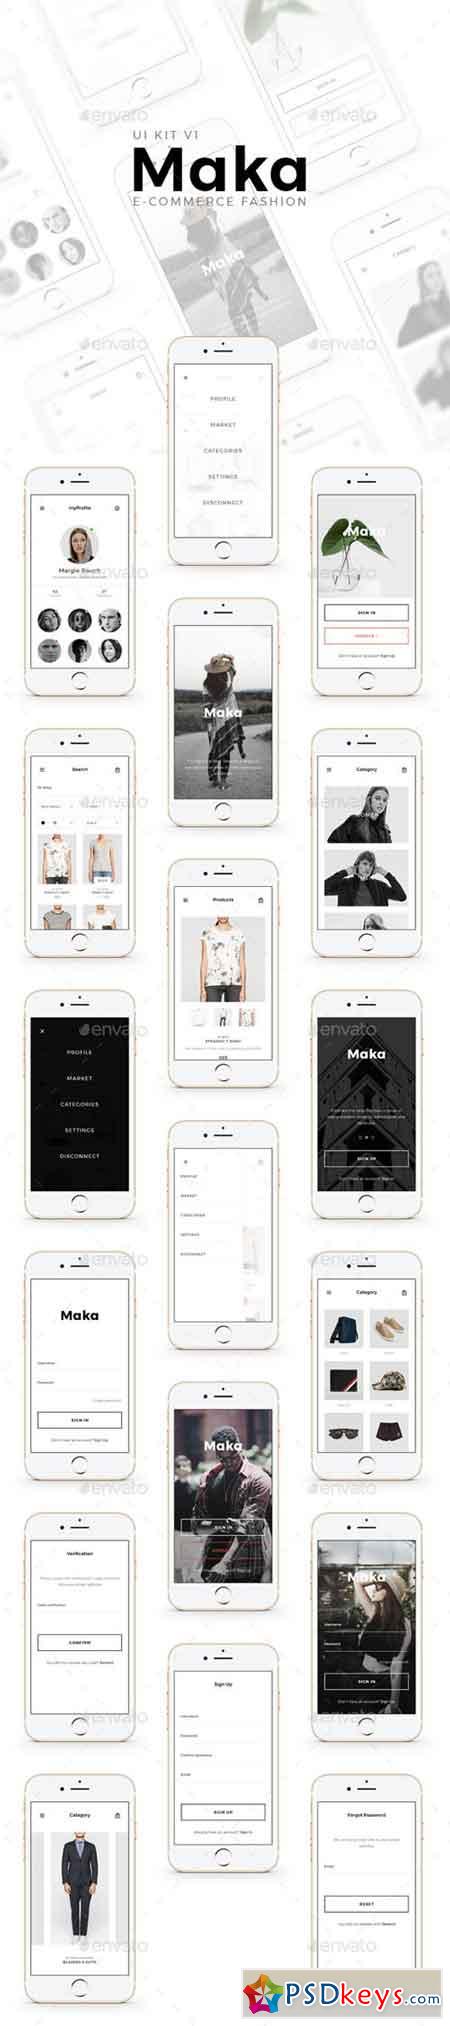 Maka e-commerce Fashion 20240394